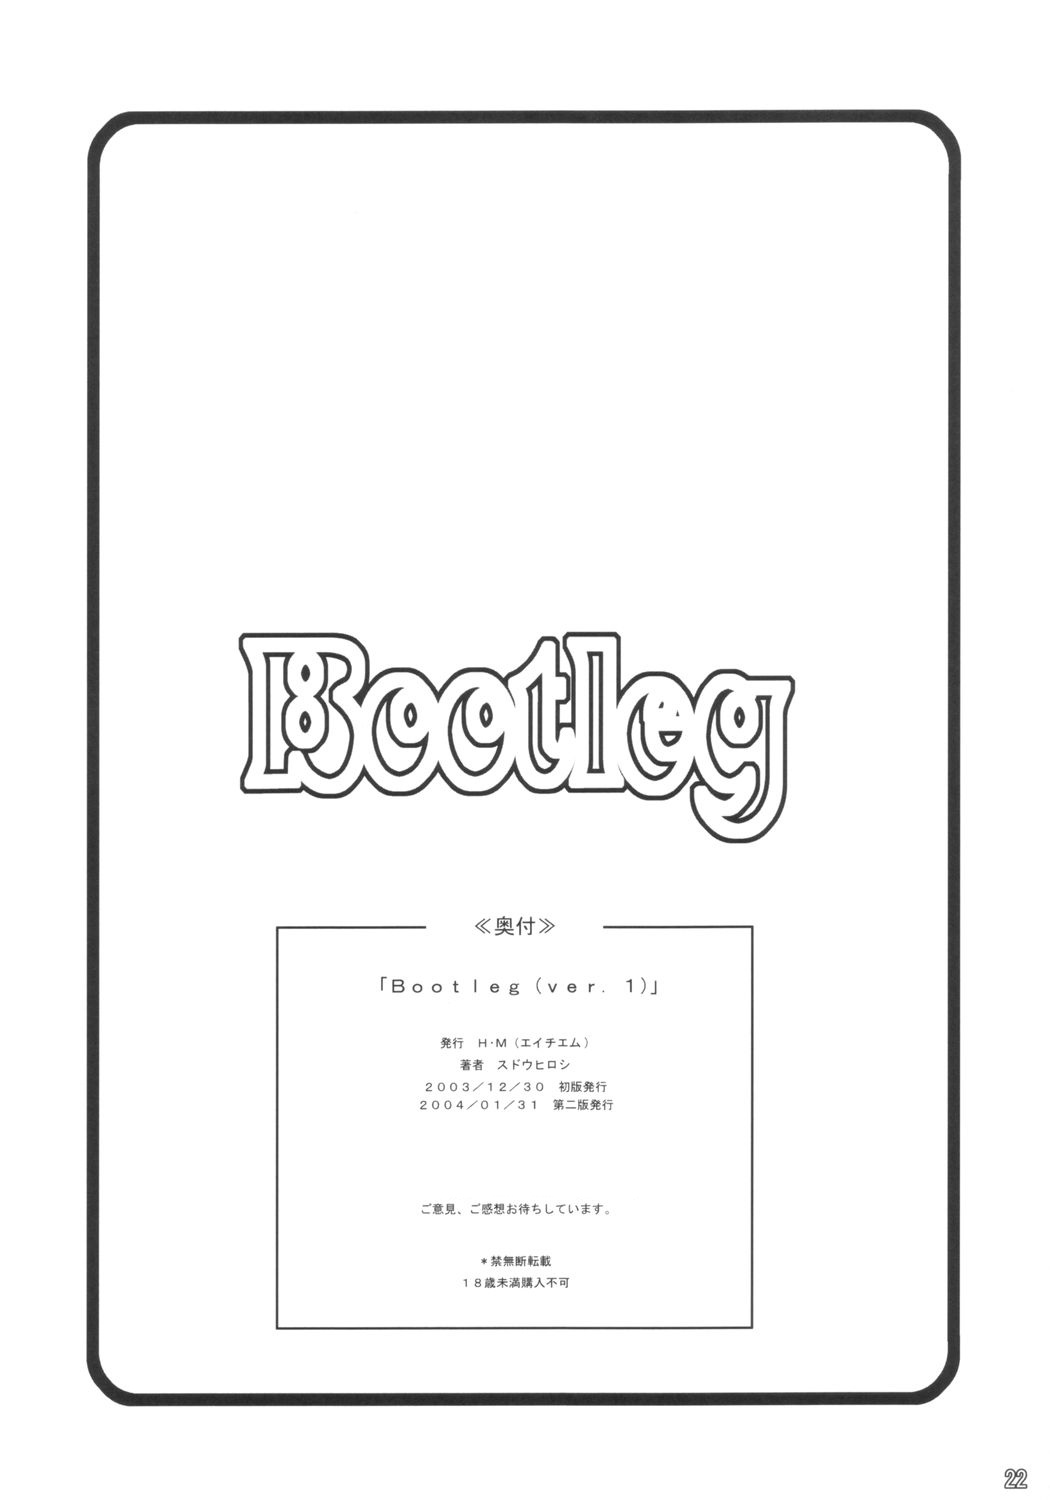 [H・M (スドウヒロシ] Bootleg ver.1 (住めば都のコスモス荘 スットコ大戦ドッコイダー) [2004-01-31]